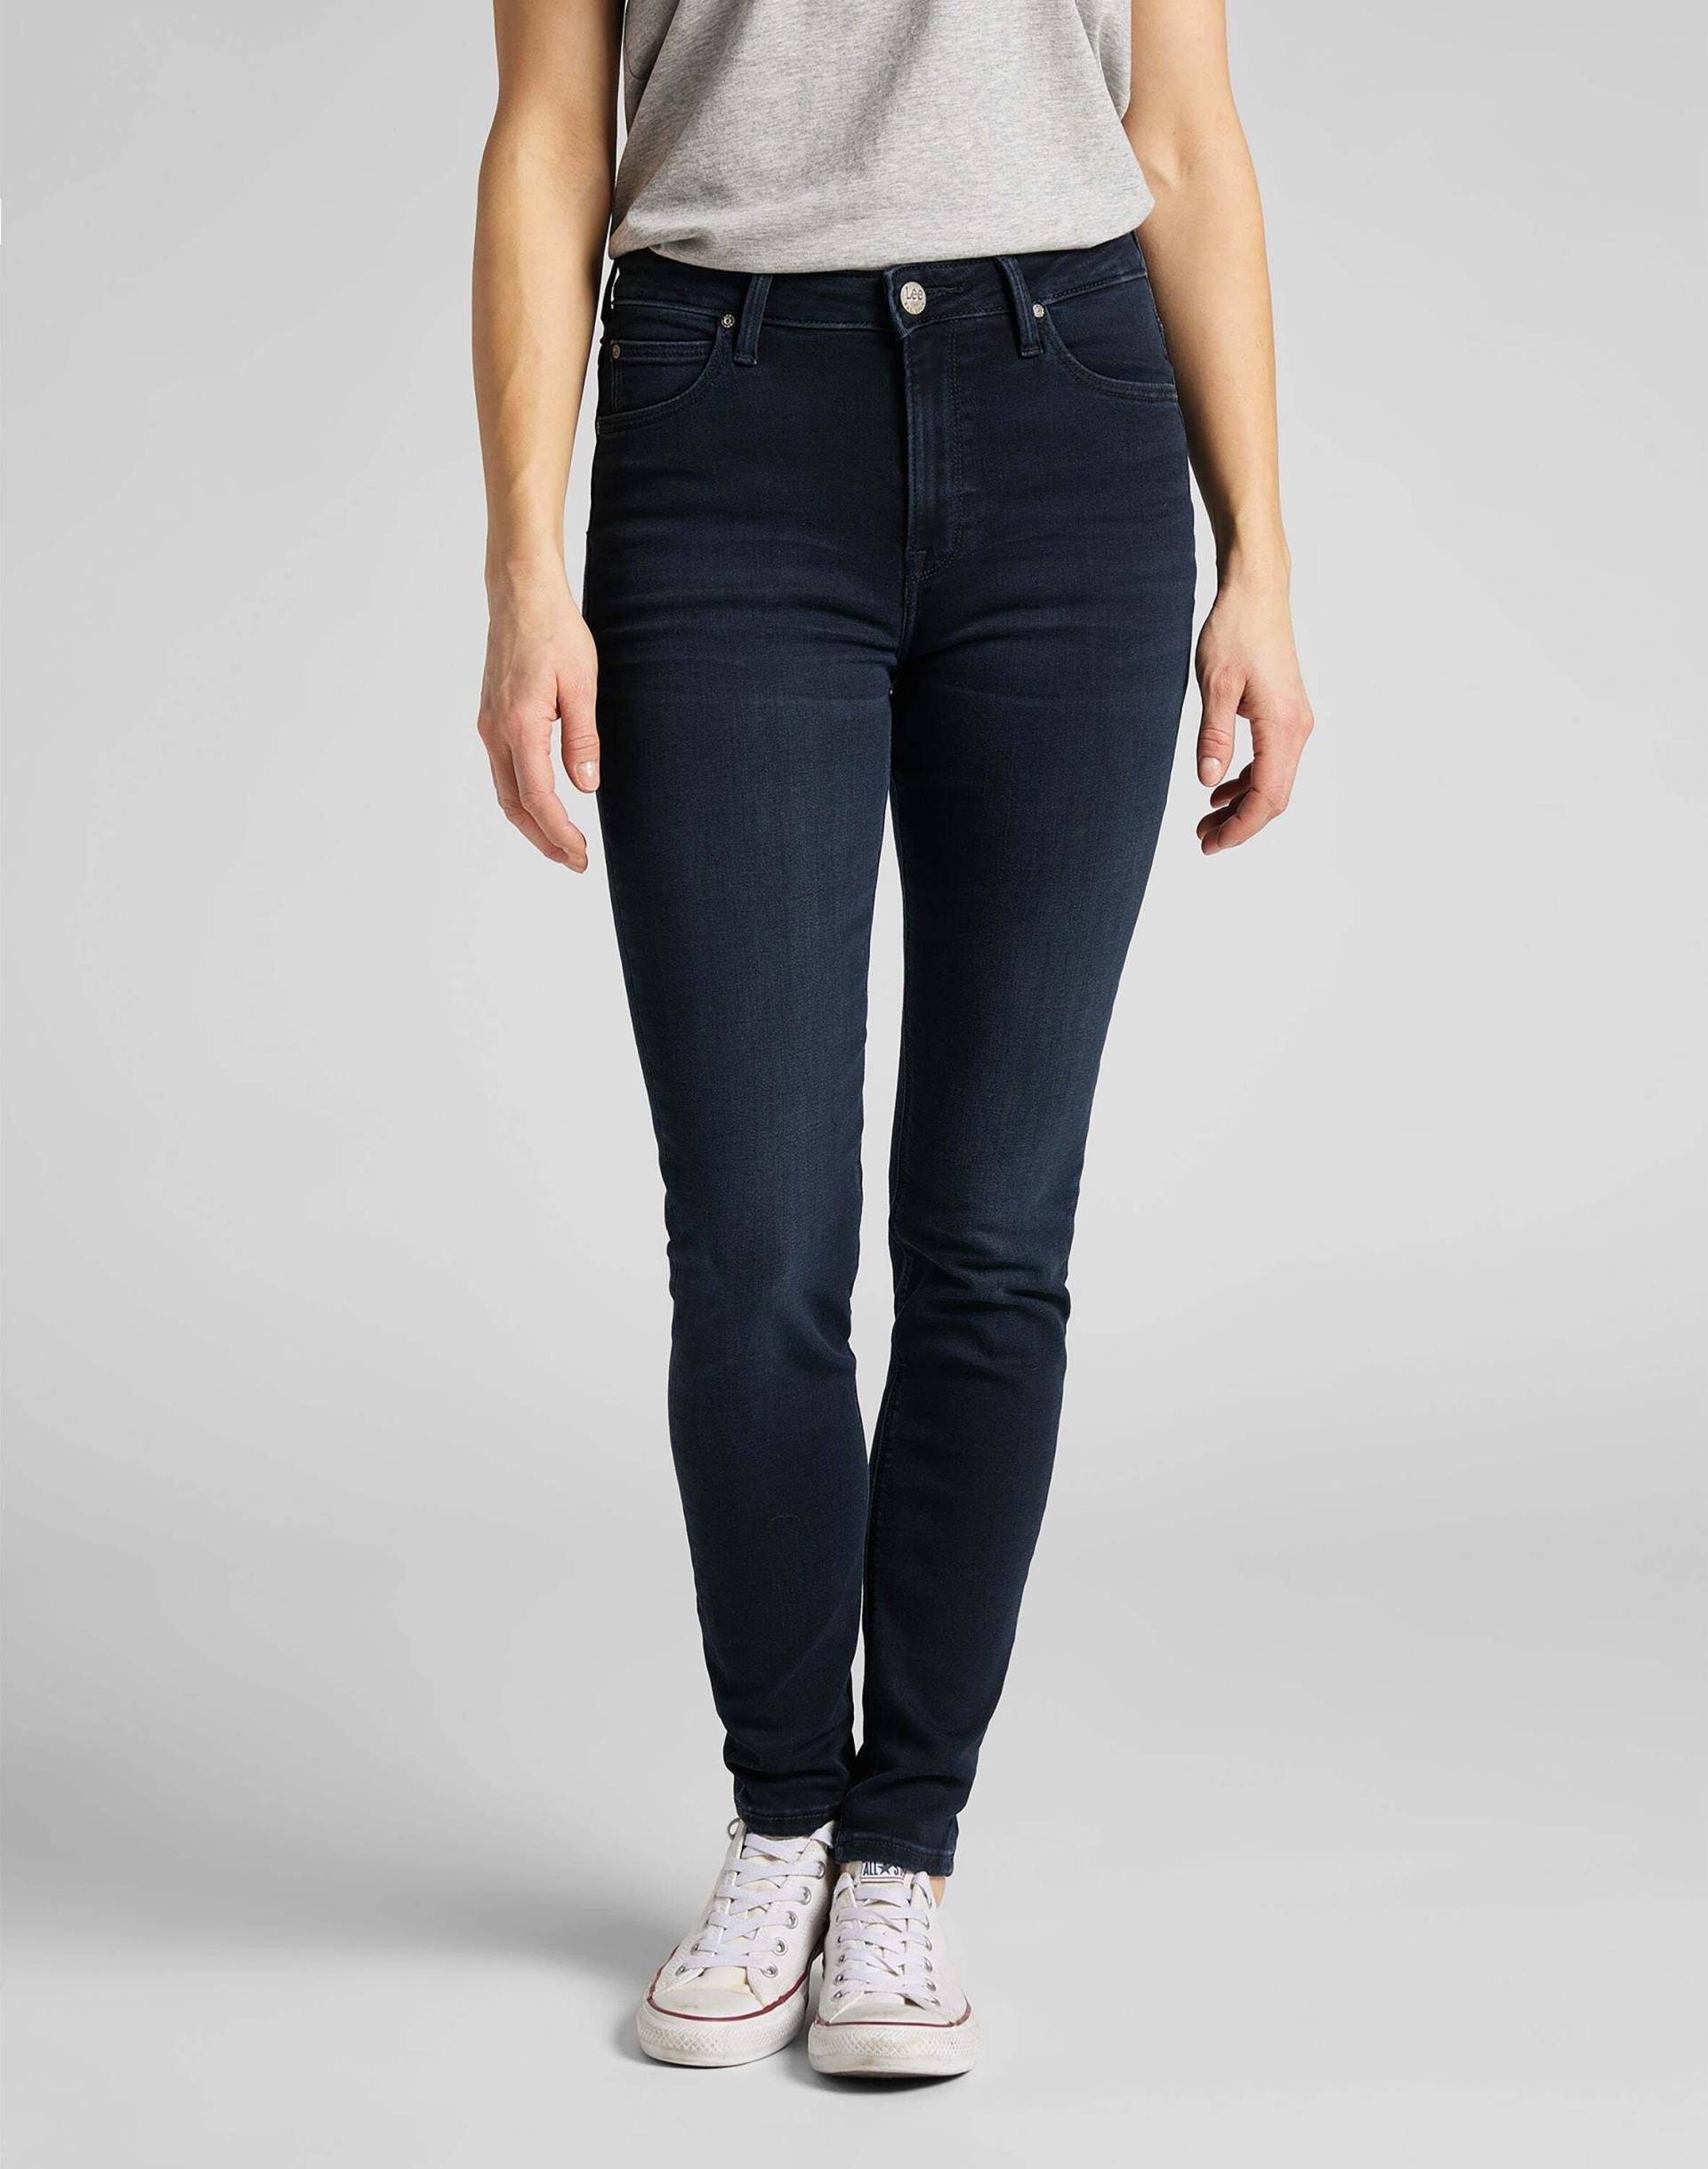 Jeans Skinny Fit Scarlett High Damen Marine L33/W25 von Lee